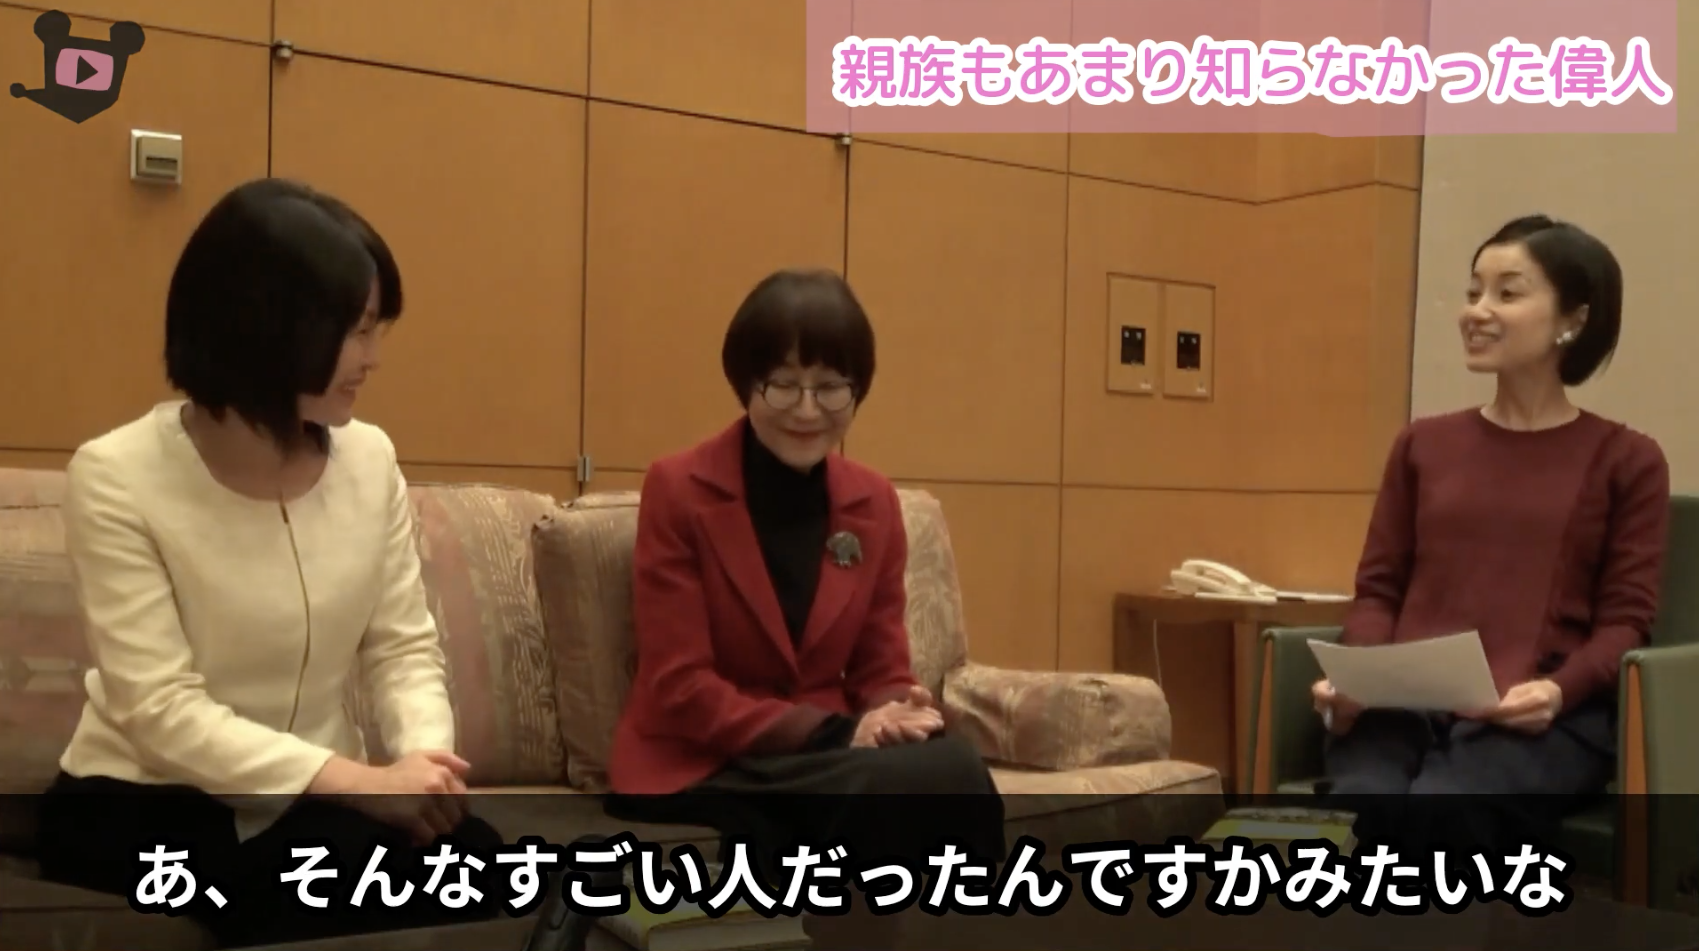 倉橋惣三物語 上皇さまの教育係 インタビュー動画を見る